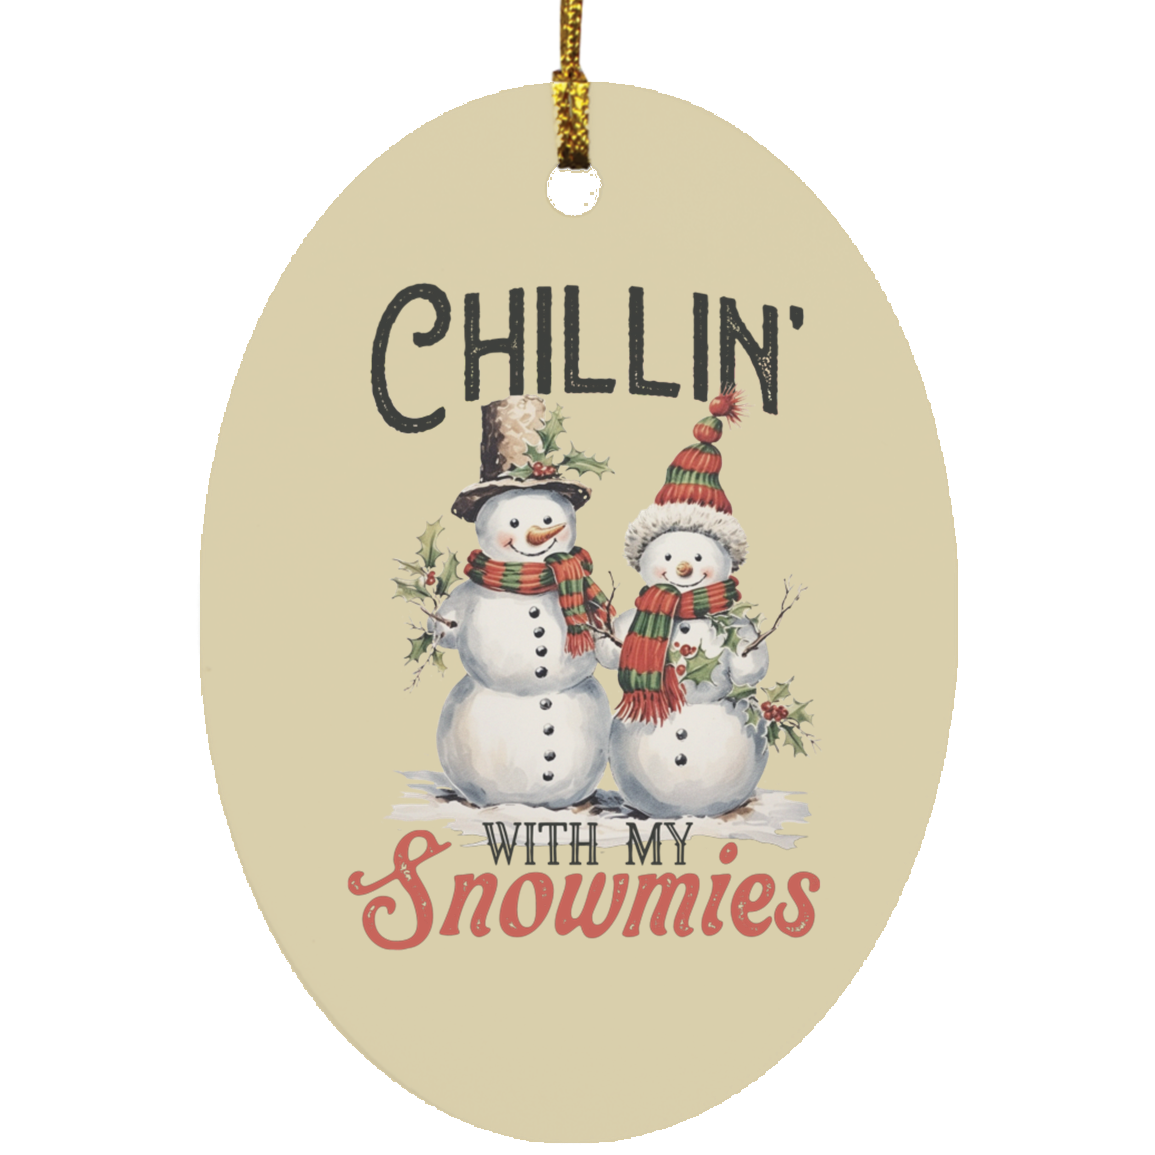 Chillin' With My Snowmies- Adorno ovalado de madera